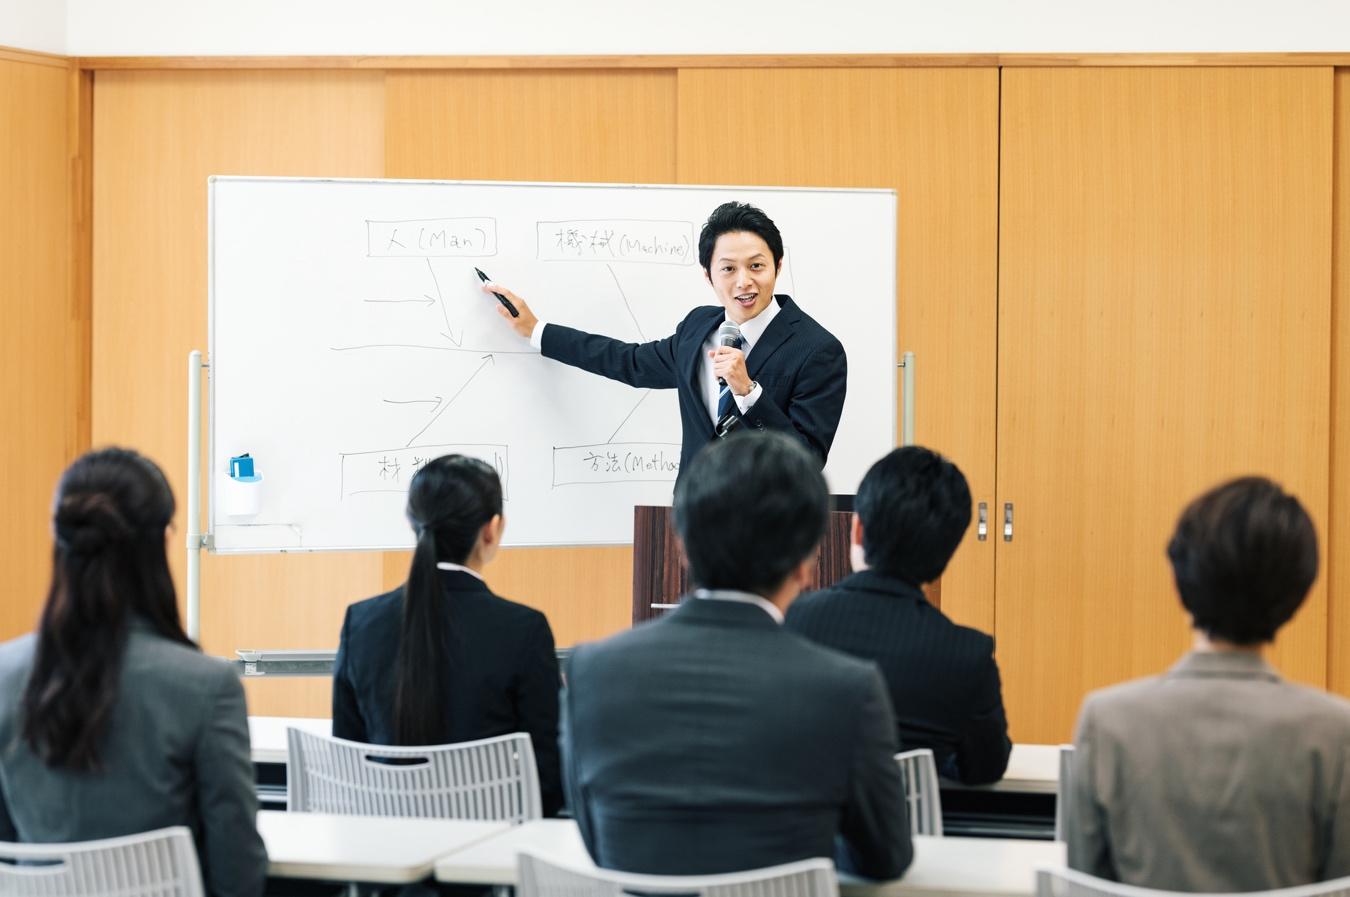 広い講義室で多数の社員を前にホワイトボードを用いて解説している男性の様子